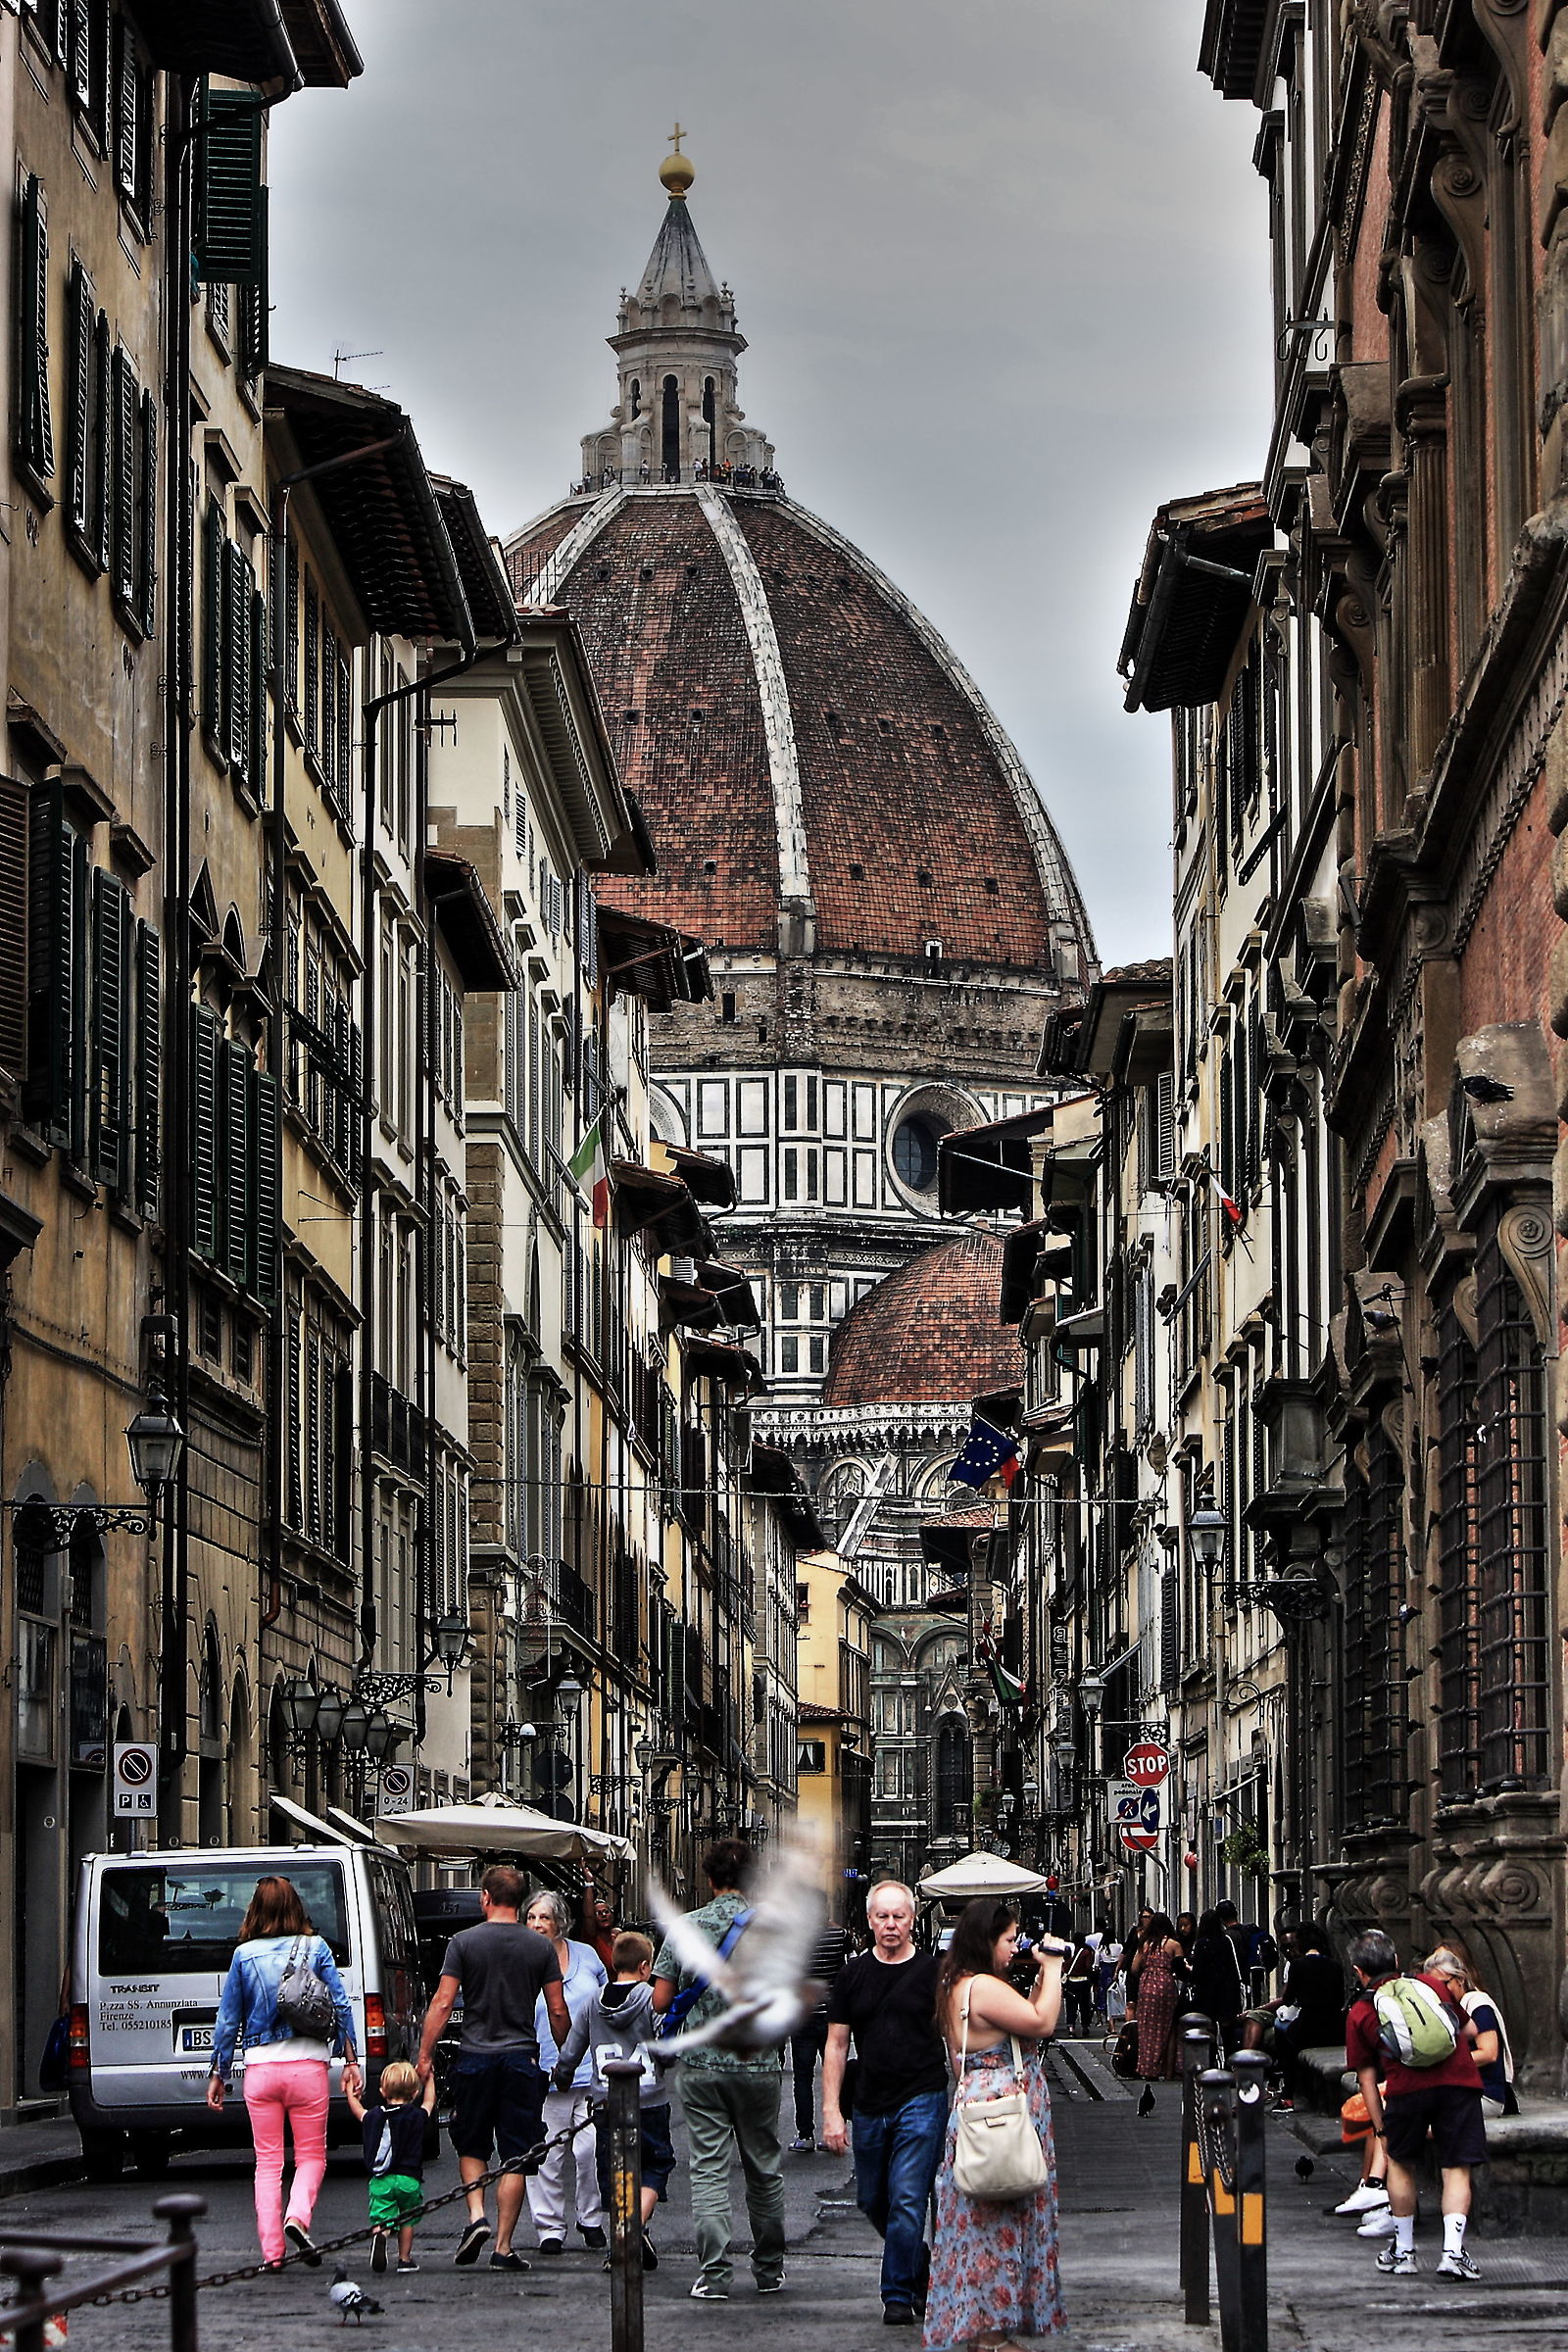 A Firenze c'è la cupola di'bbrunelleschi...